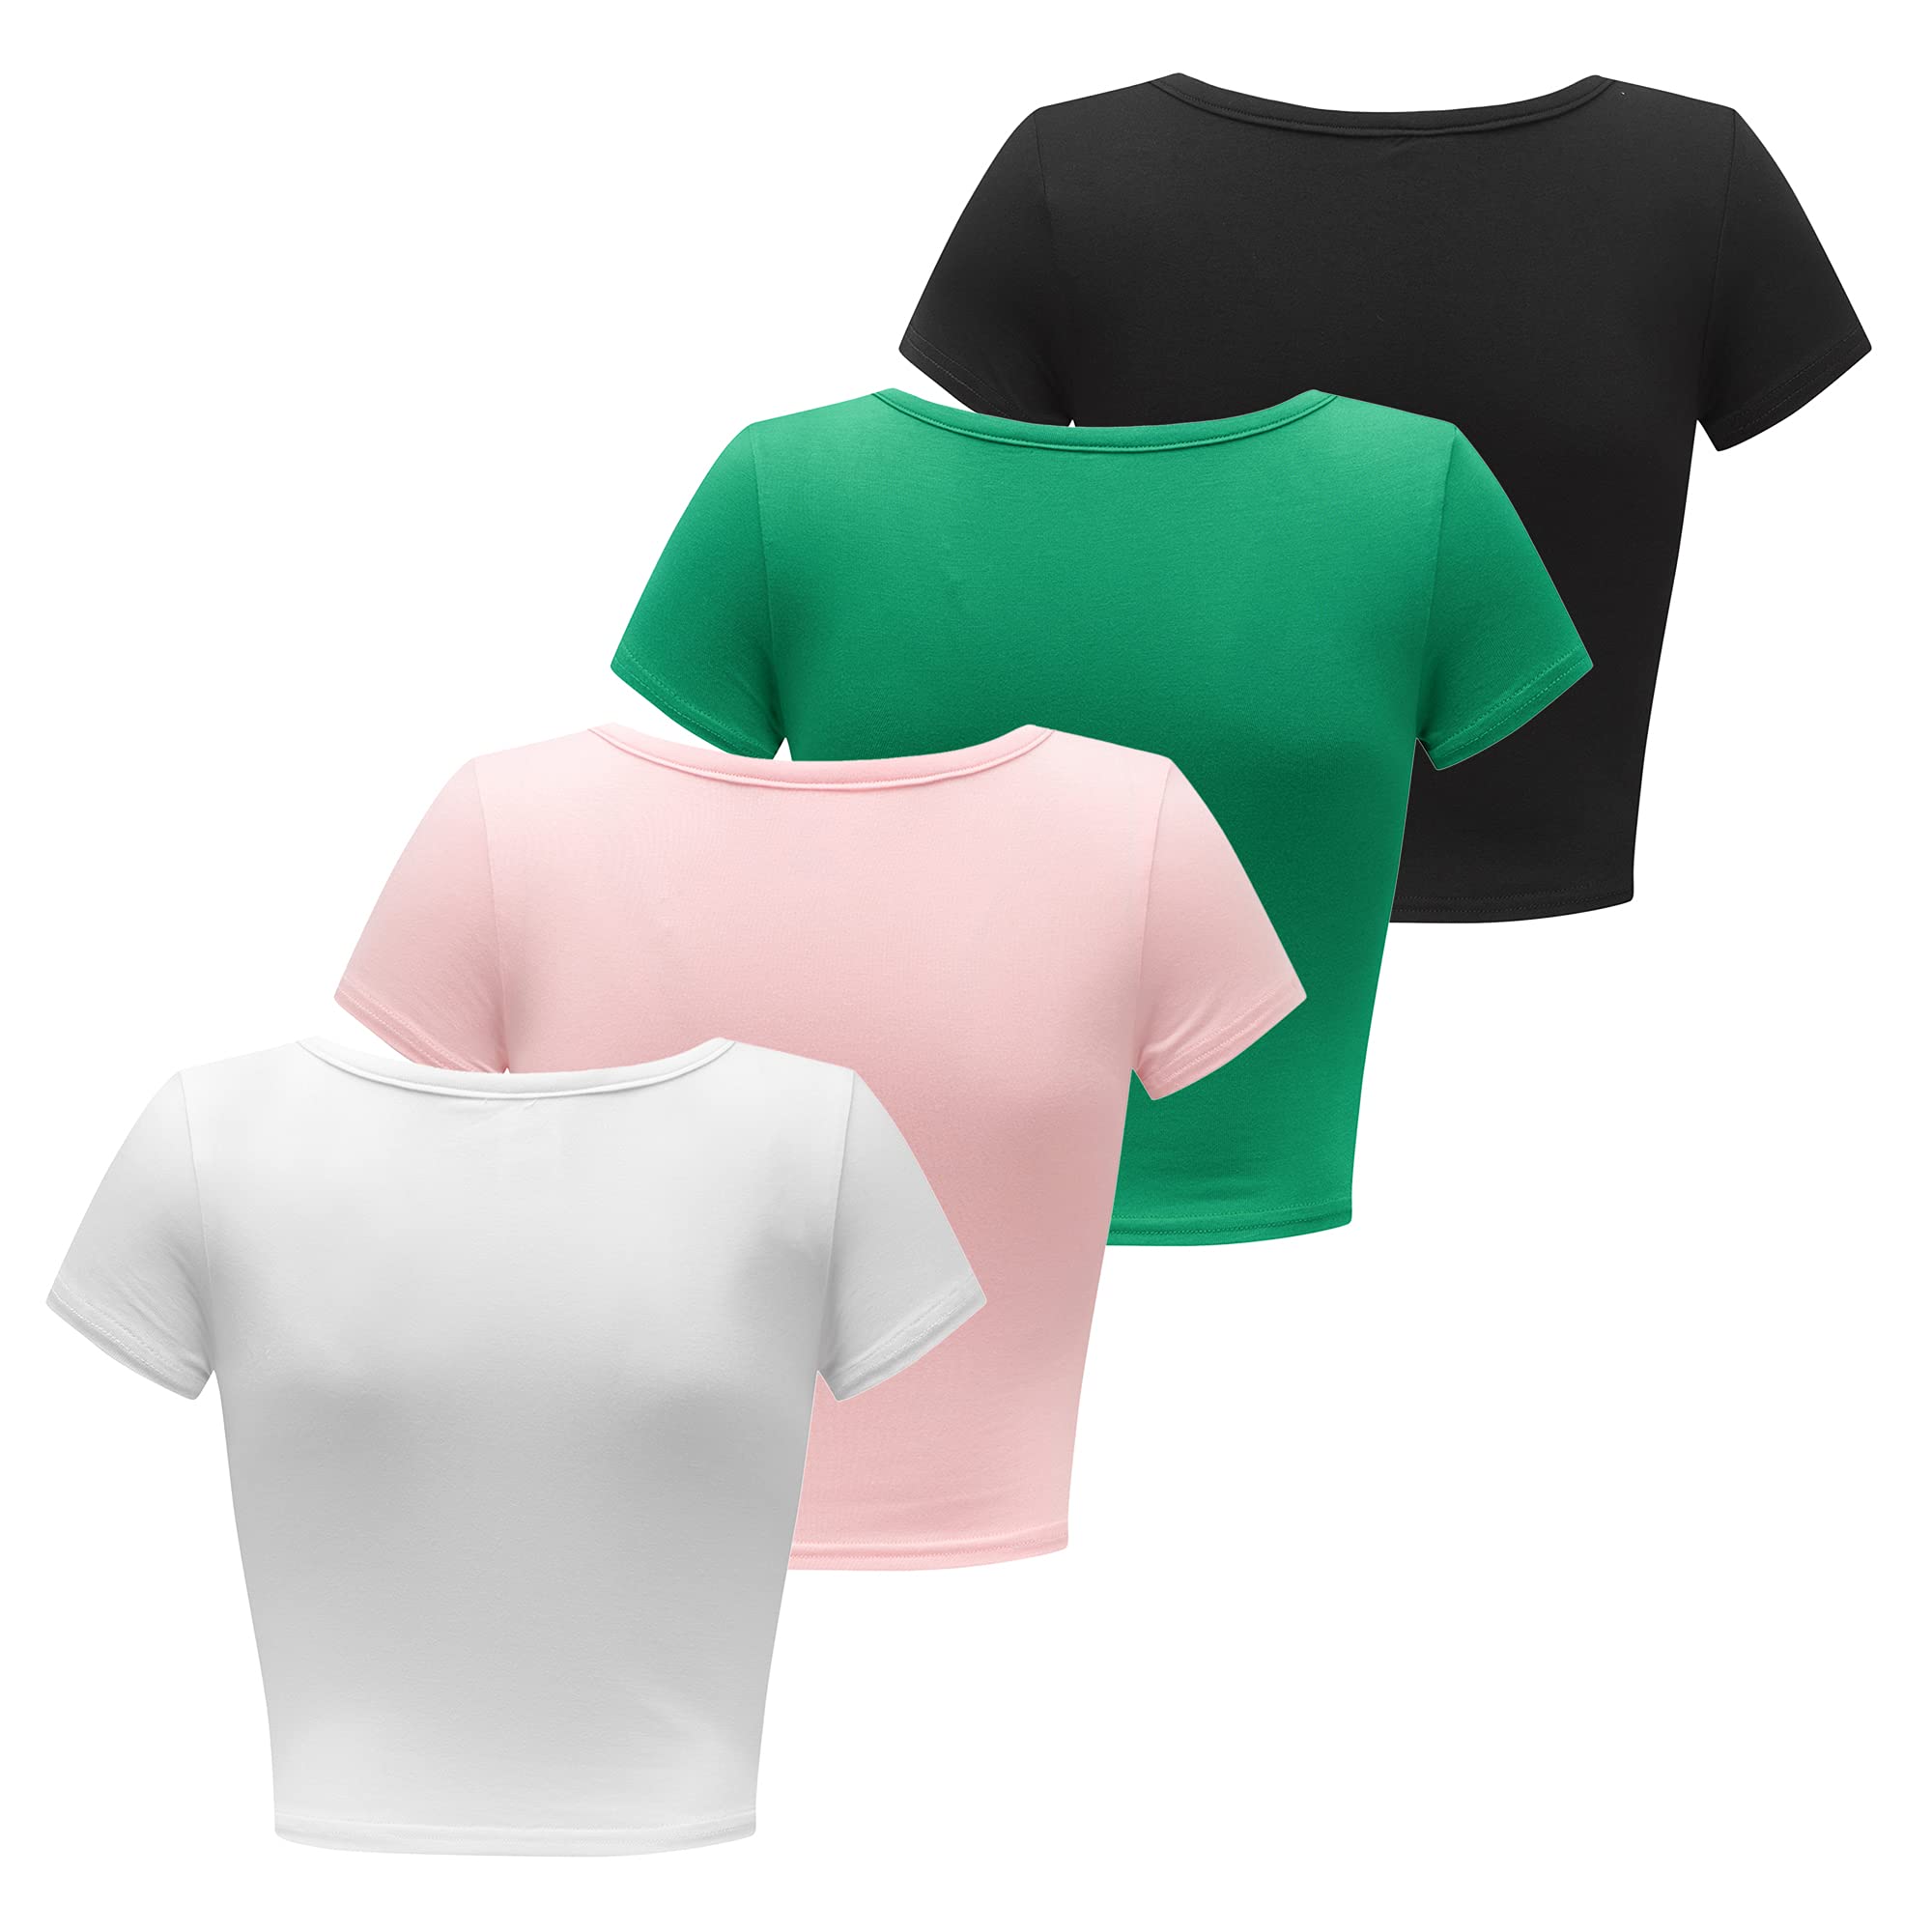 Formeet17 Women’s 4 Pieces Basic Crop Tops Scoop Neck Cap Sleeve Shirts